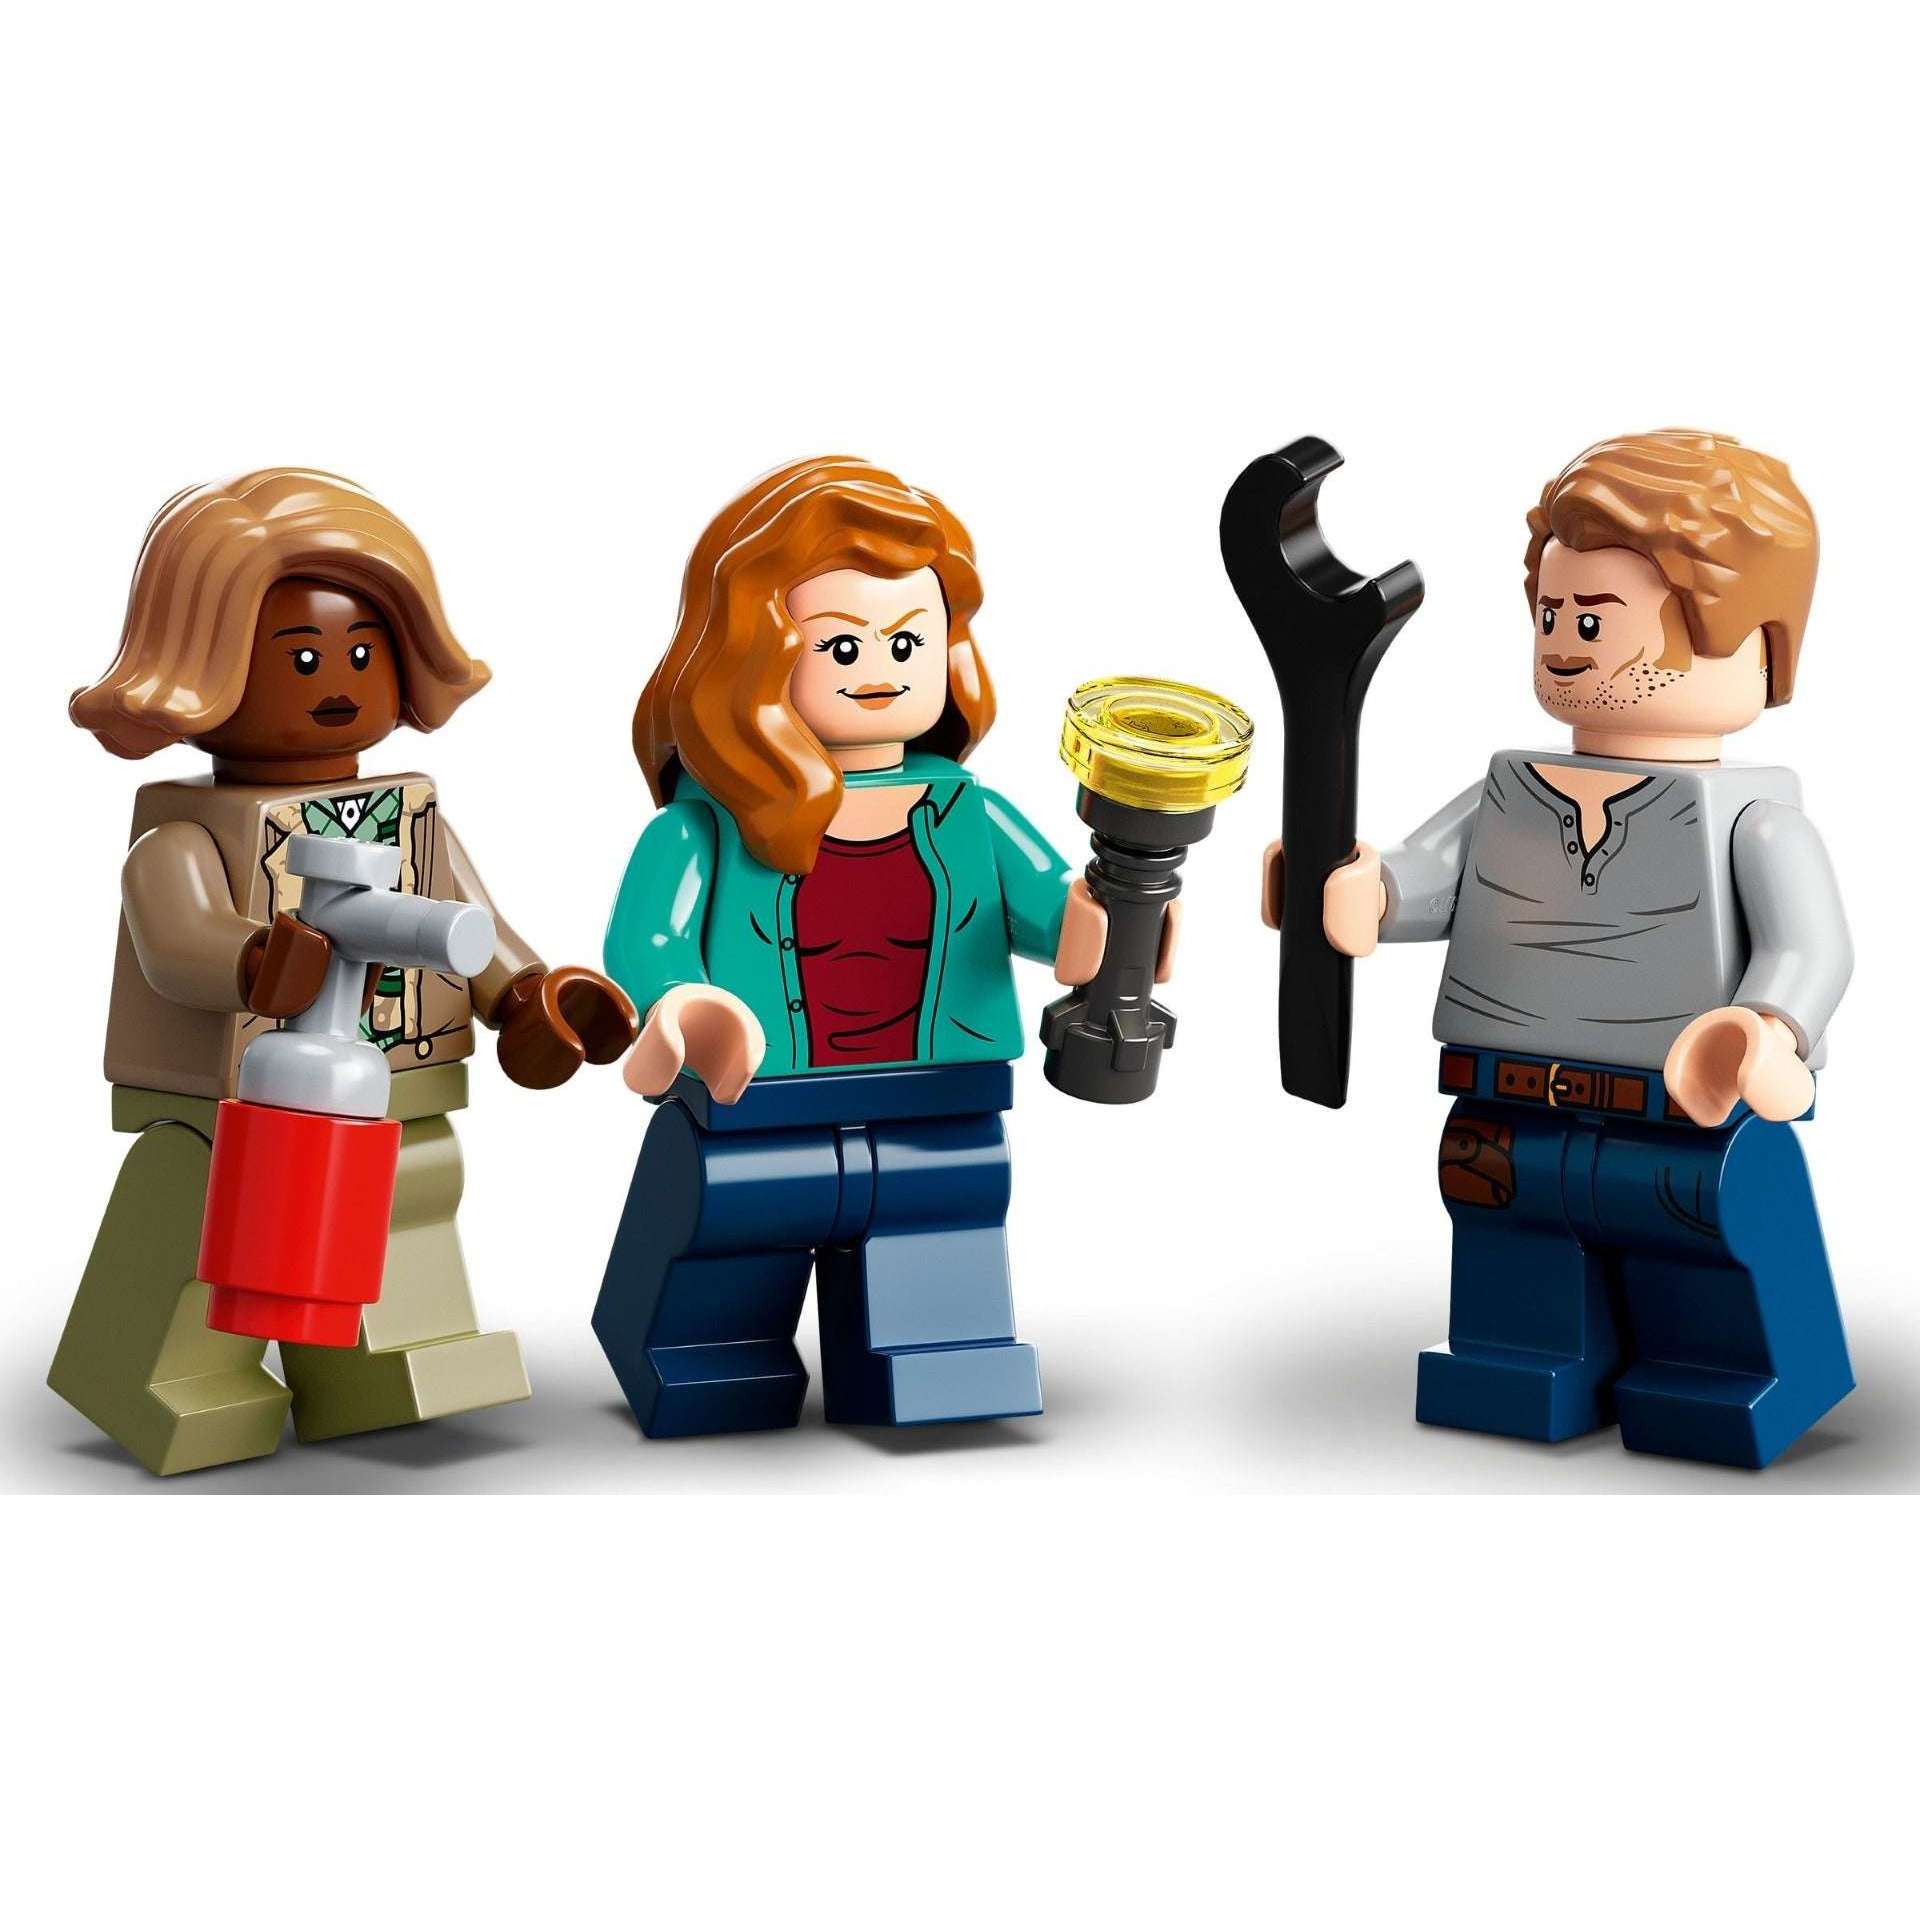 Fun DIY Lego Keychains — The Family Handyman